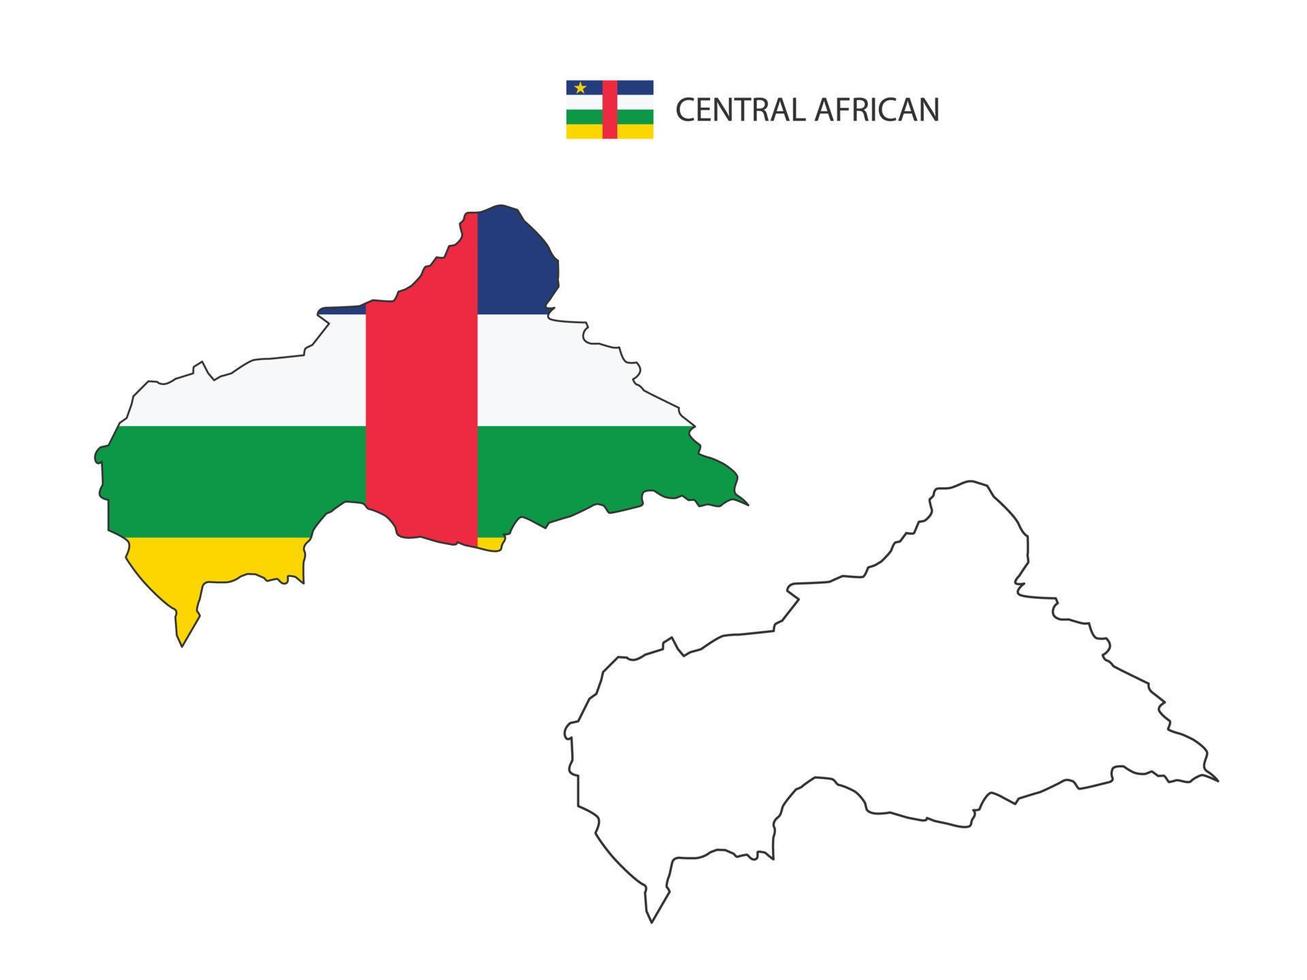 vector de ciudad de mapa de África central dividido por estilo de simplicidad de contorno. tiene 2 versiones, versión de línea delgada negra y versión de color de bandera de país. ambos mapas estaban en el fondo blanco.